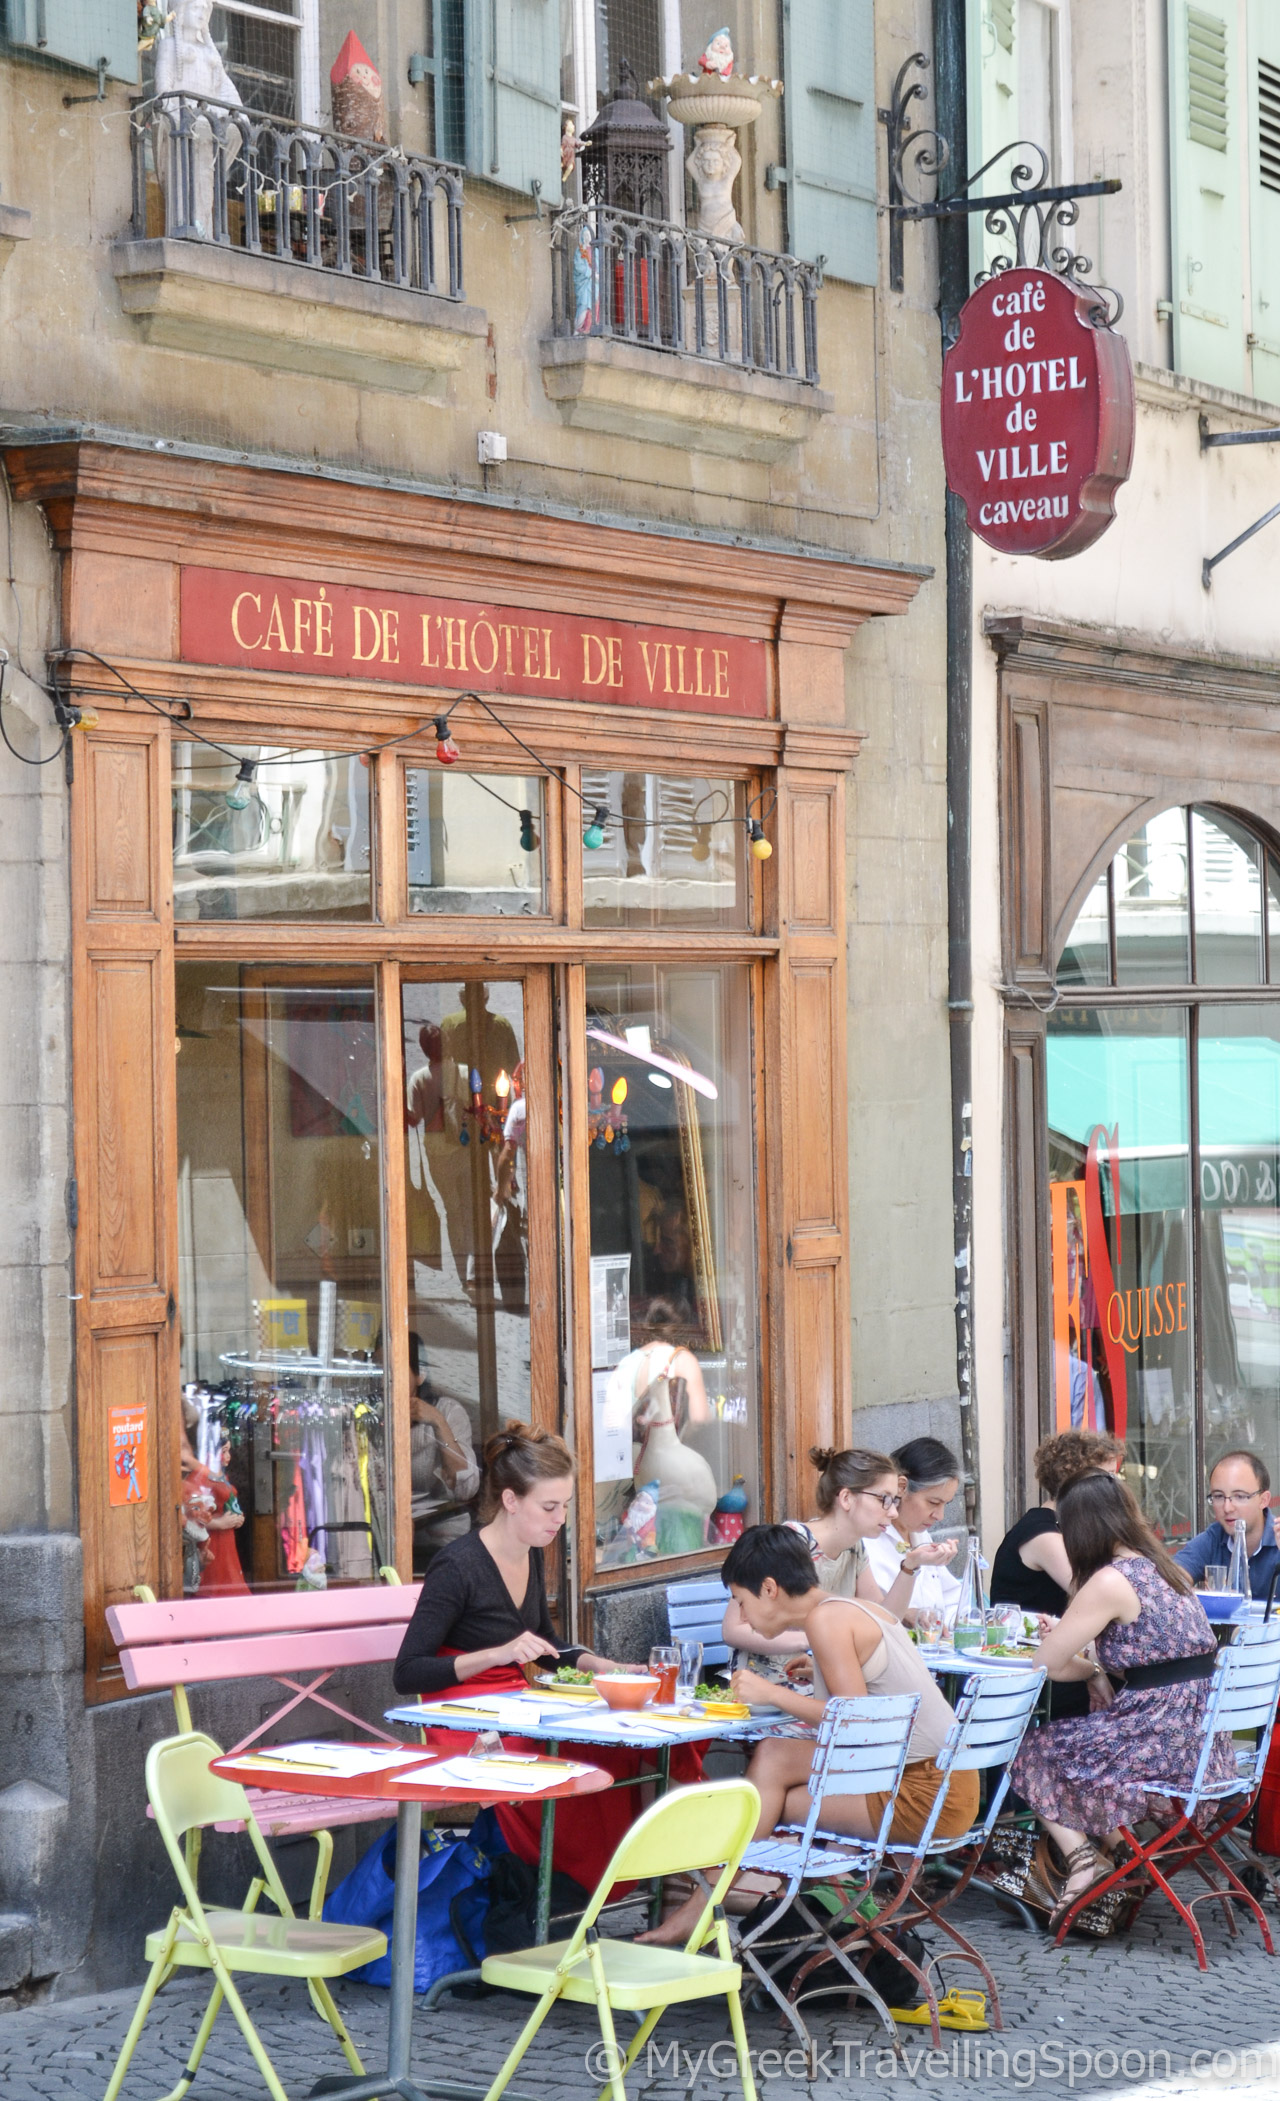 Lunchtime at Café de l'Hôtel de Ville.